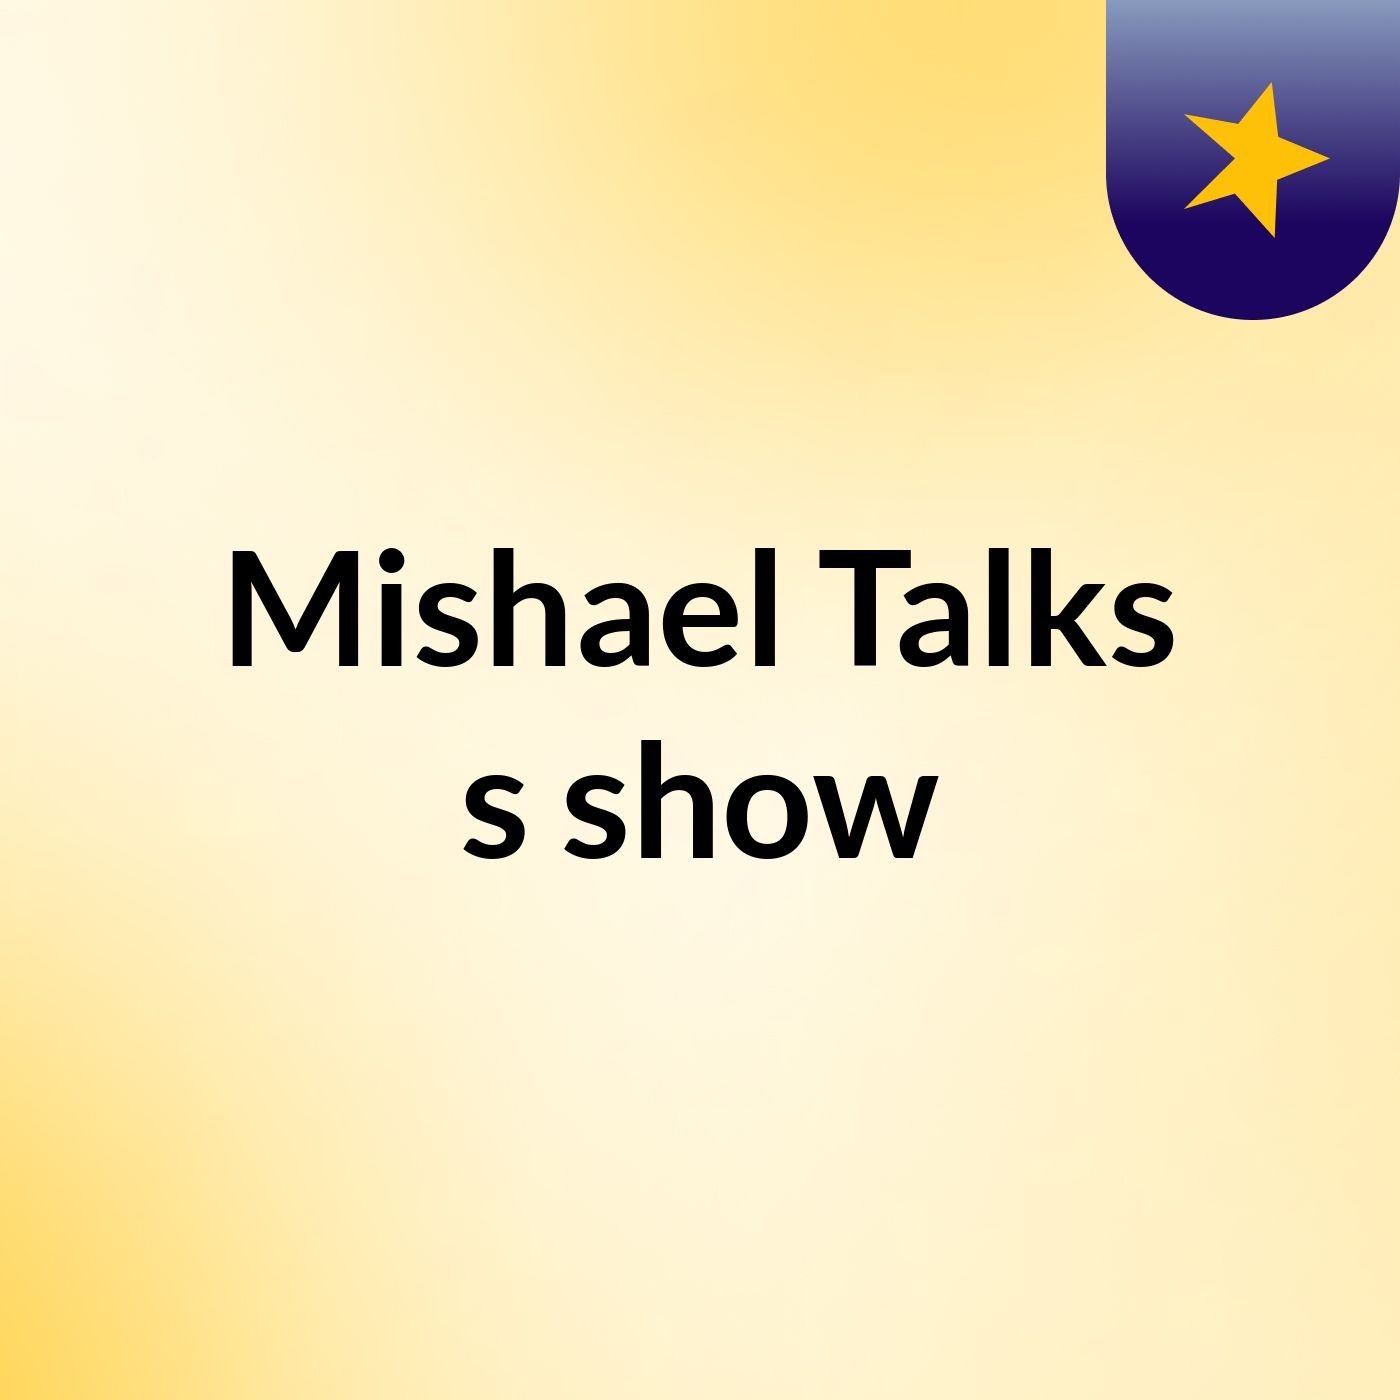 Mishael Talks's show